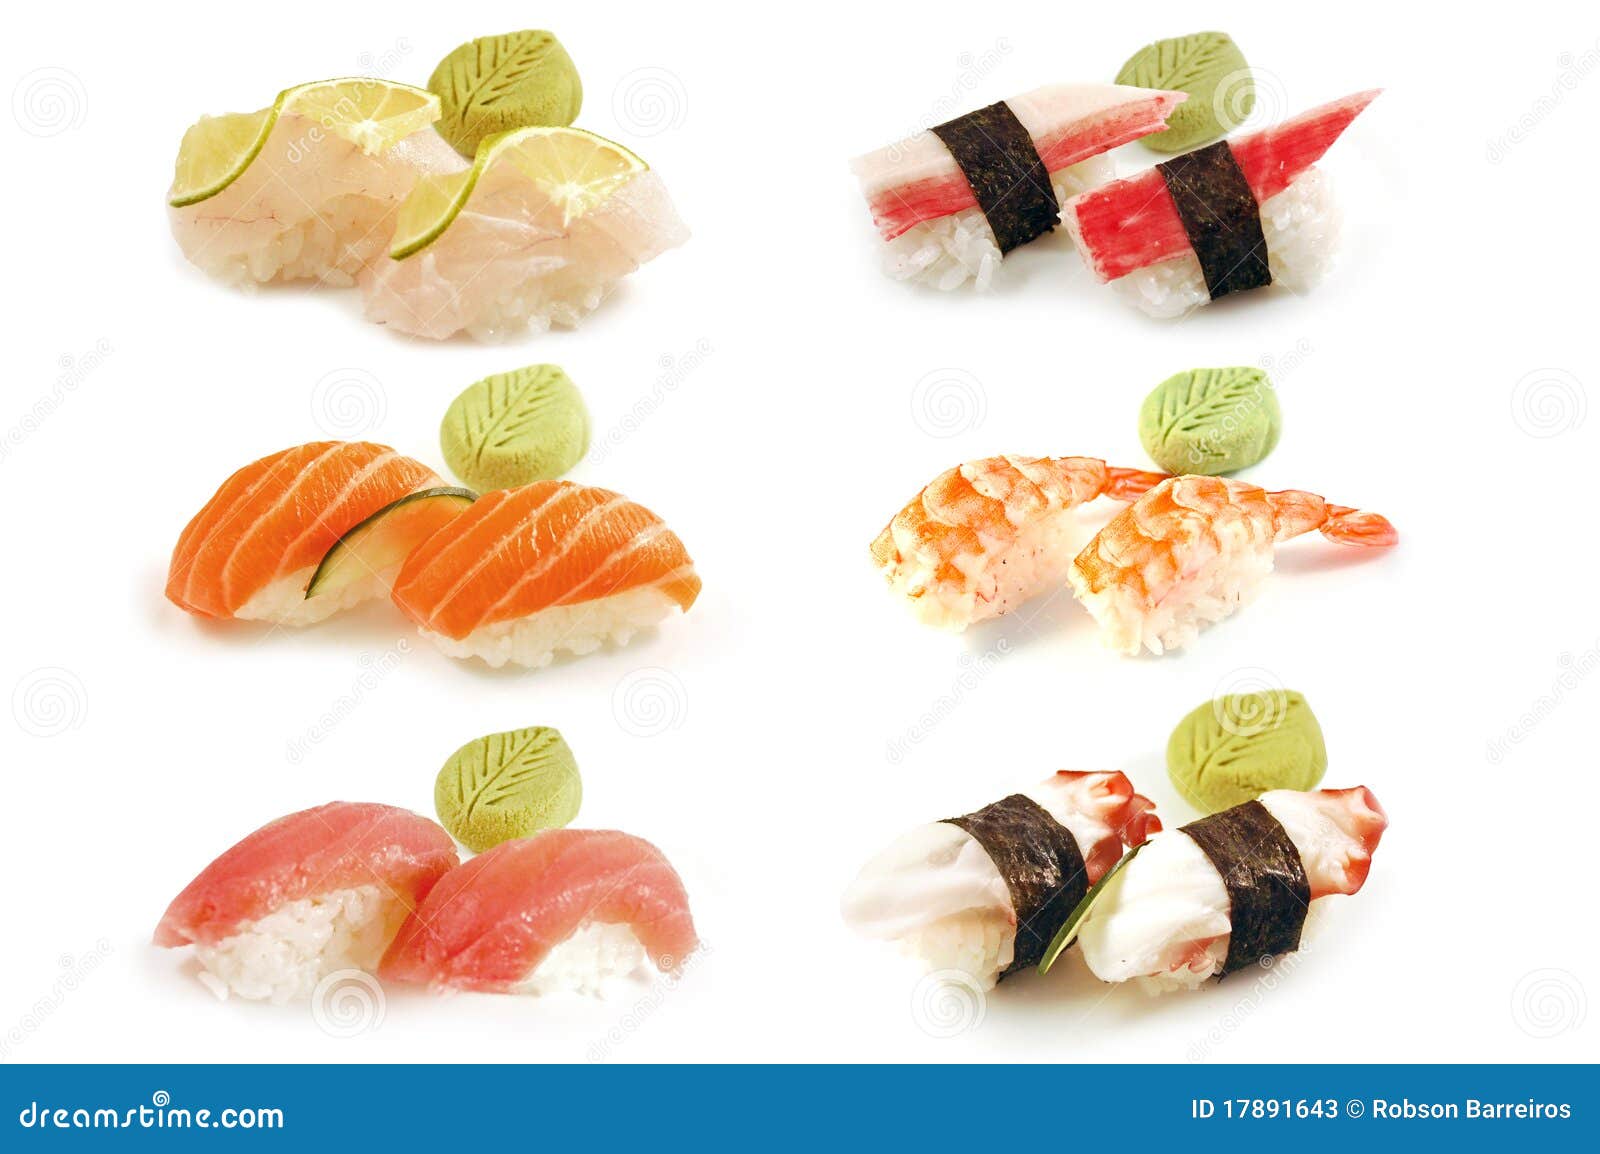 nigiri pair of sushi composition